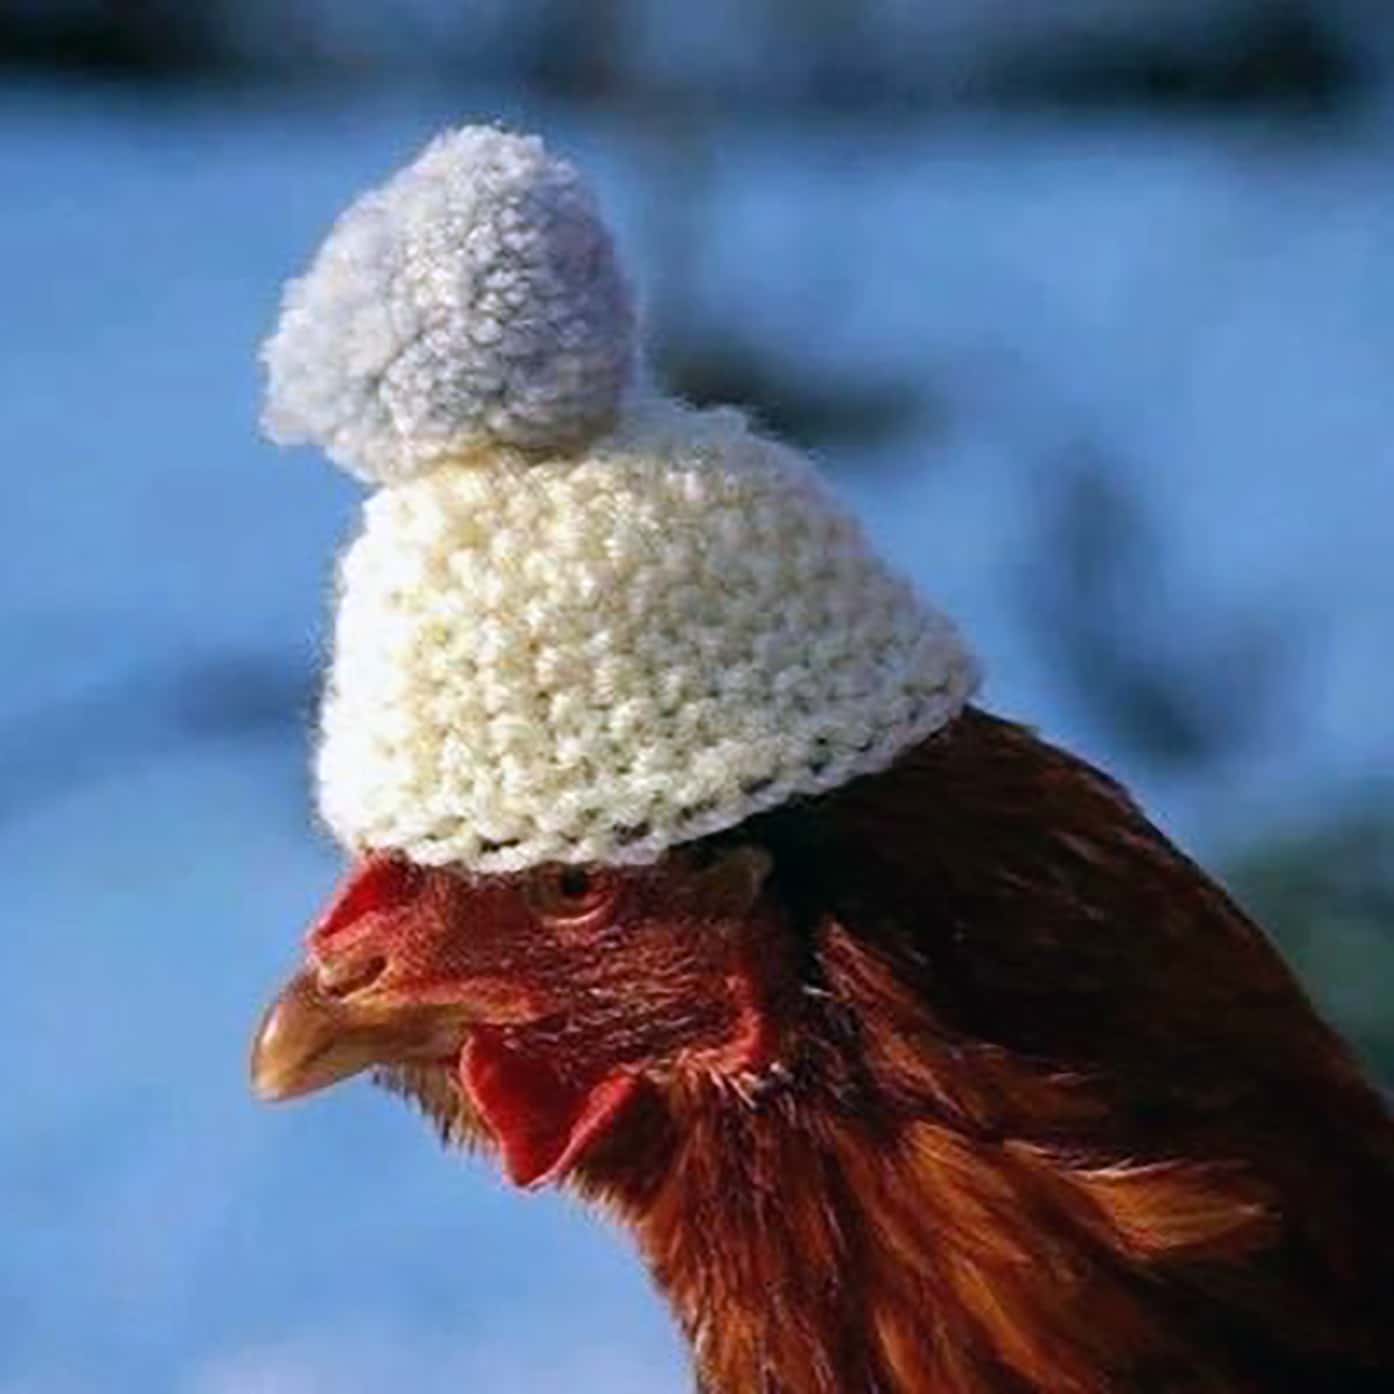 chicken heater for winter